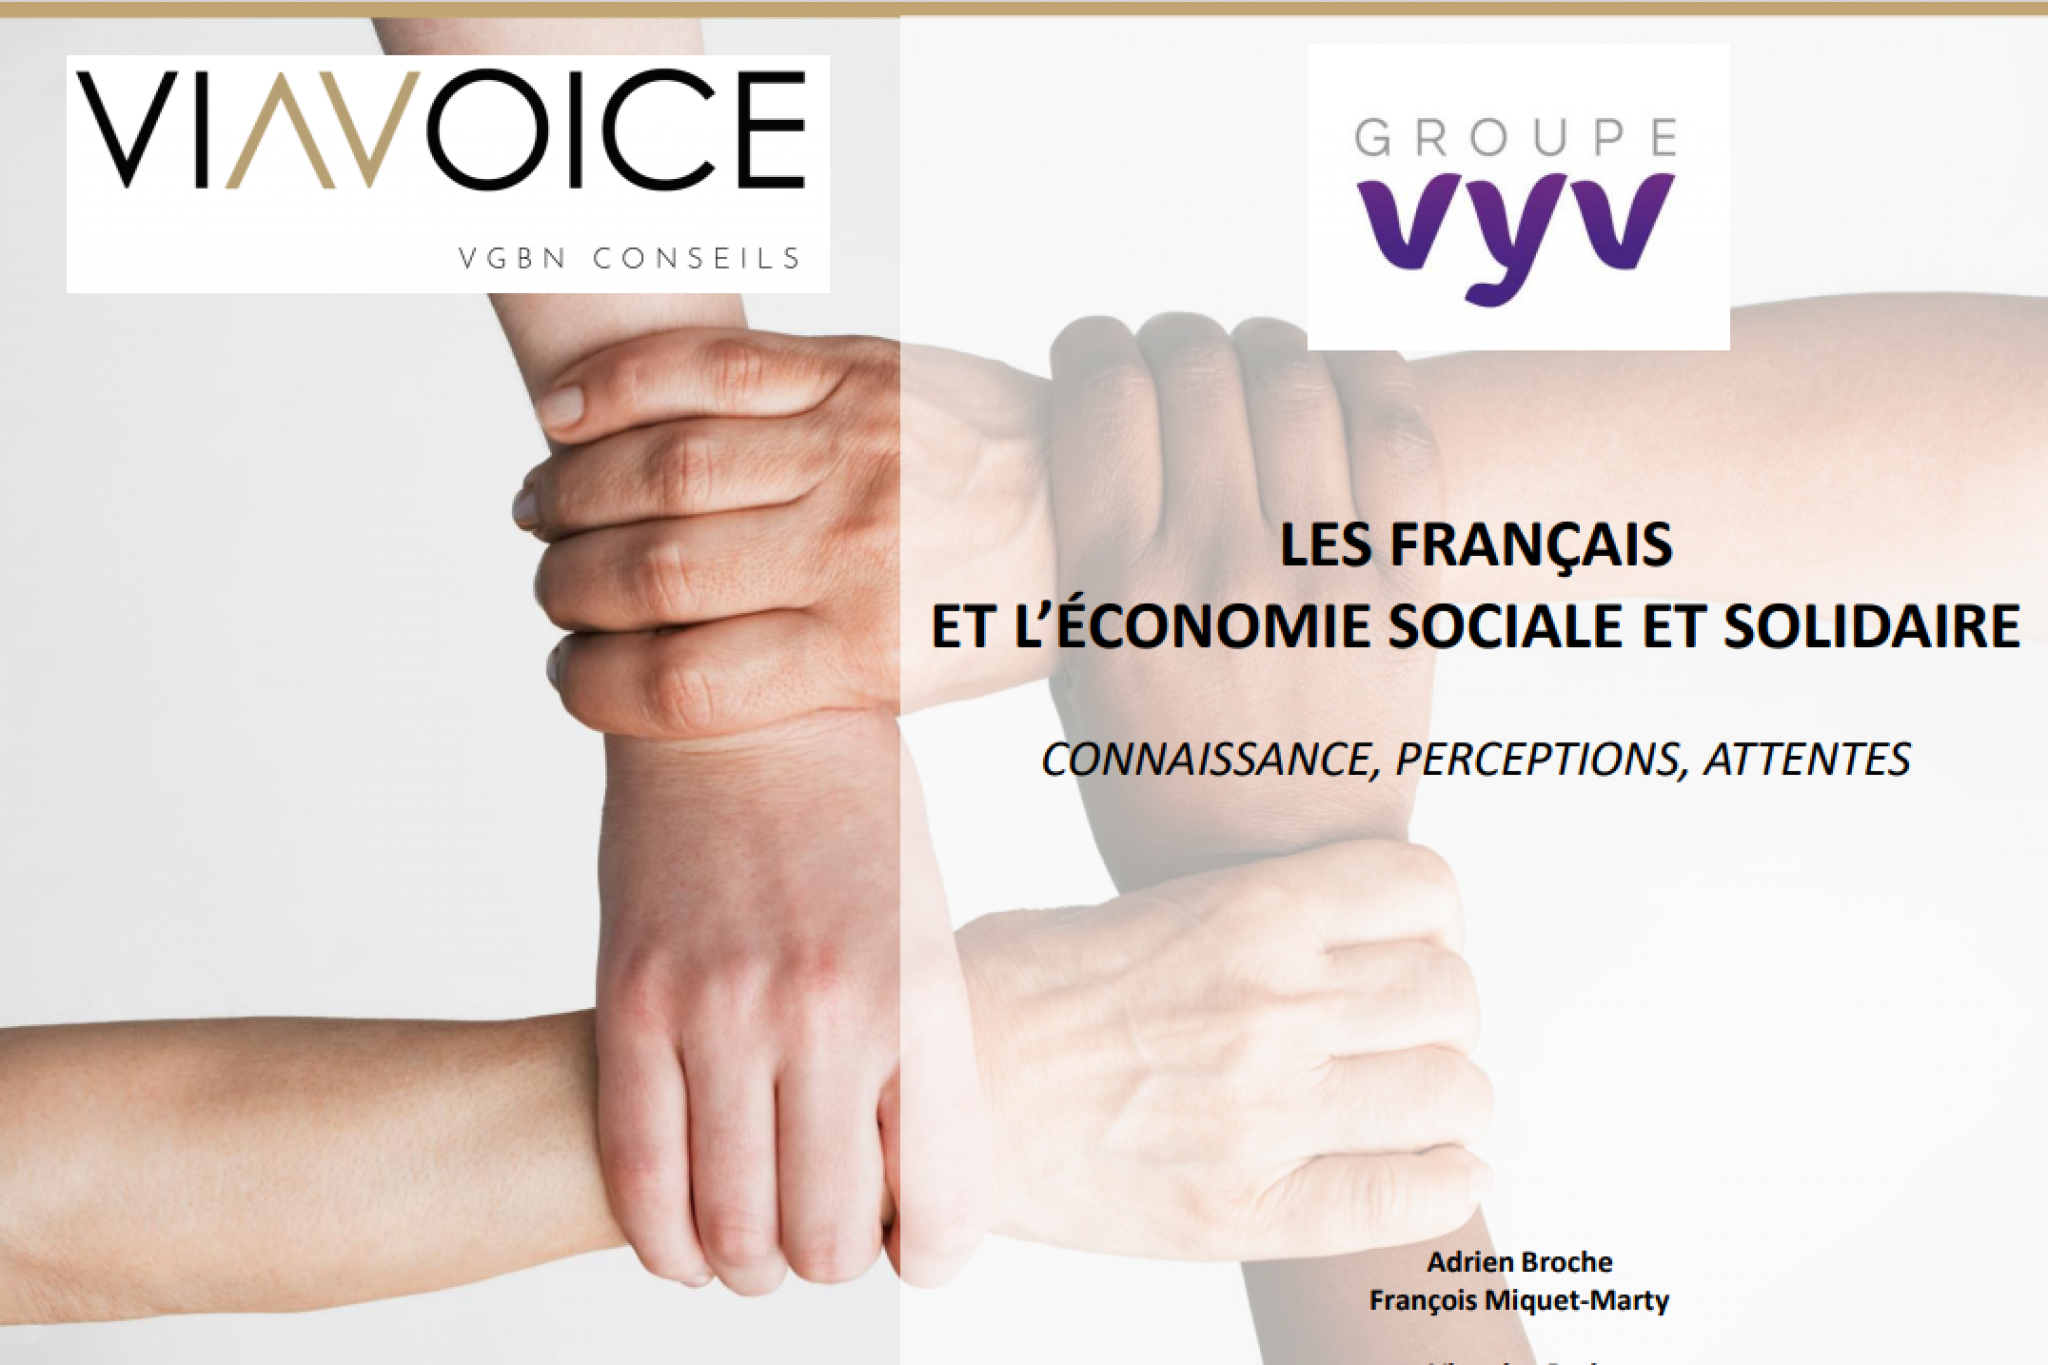 Les Français et l'Economie Sociale et solidaire : le Groupe VYV et Viavoice dévoilent un sondage sur l'ESS